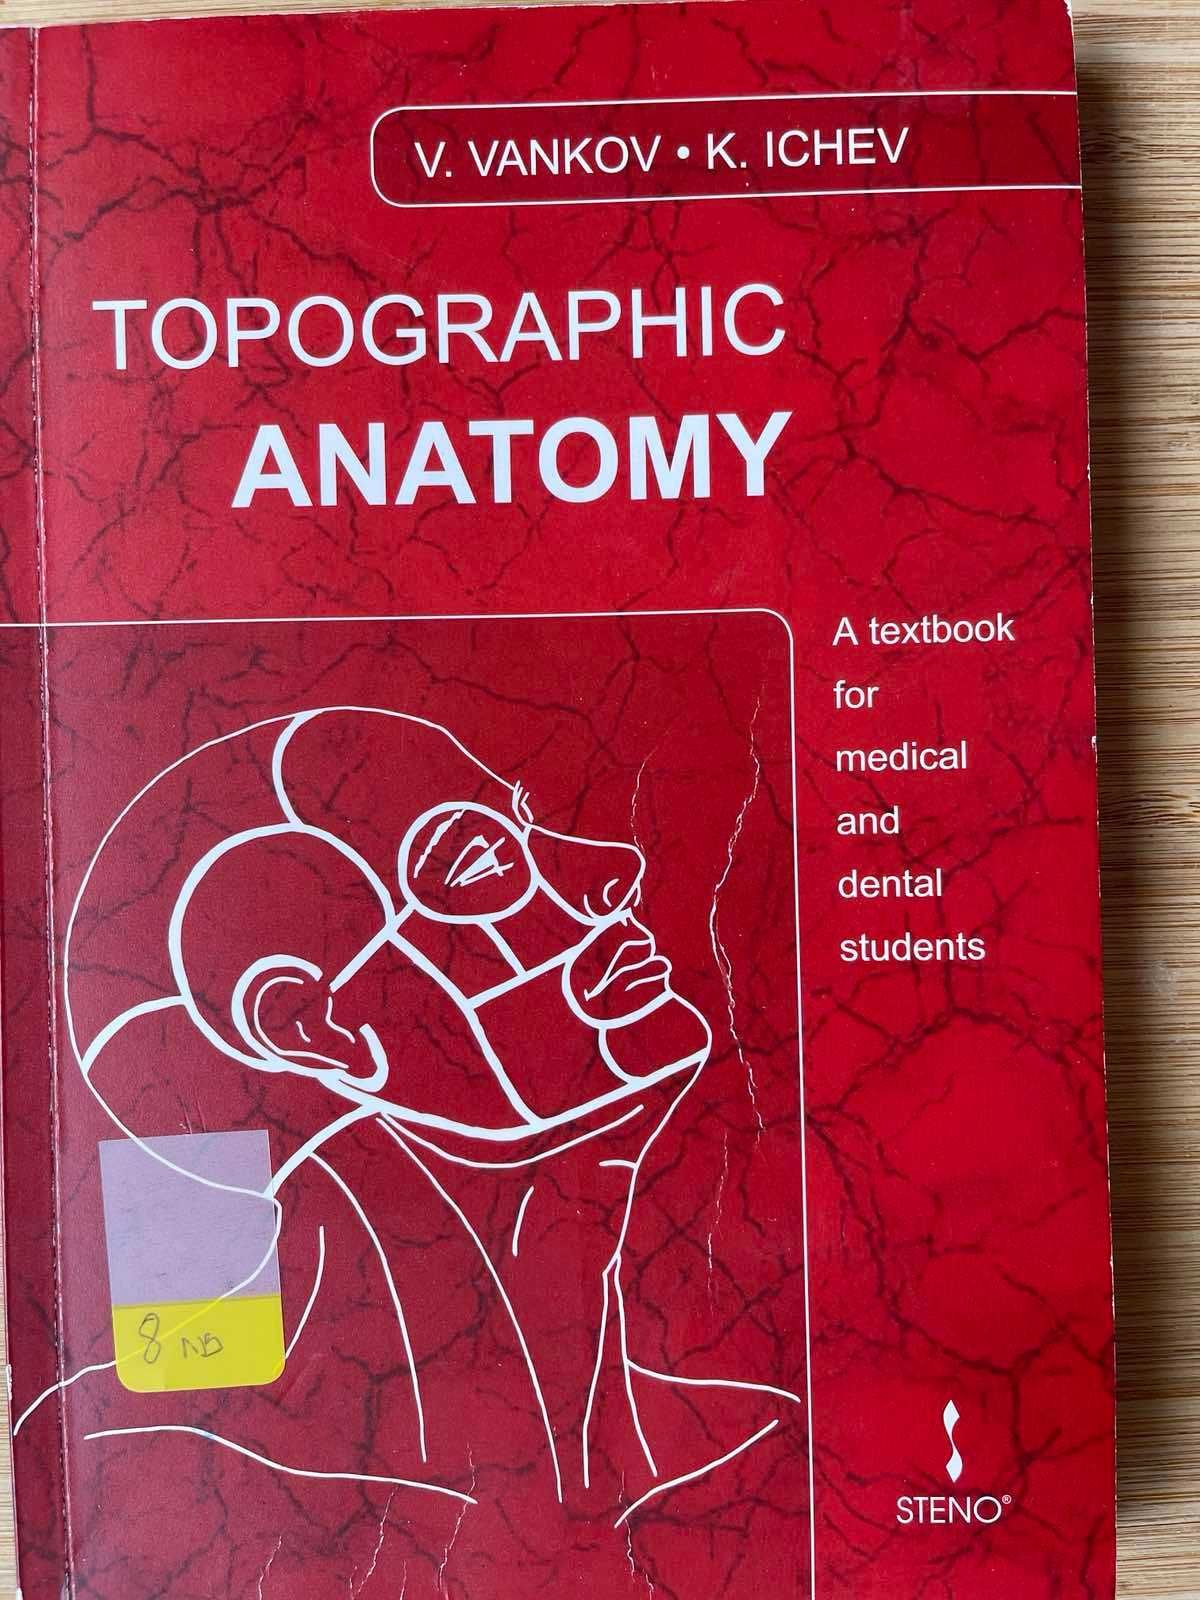 Учебници по медицина на английски език.Medical textbooks in English